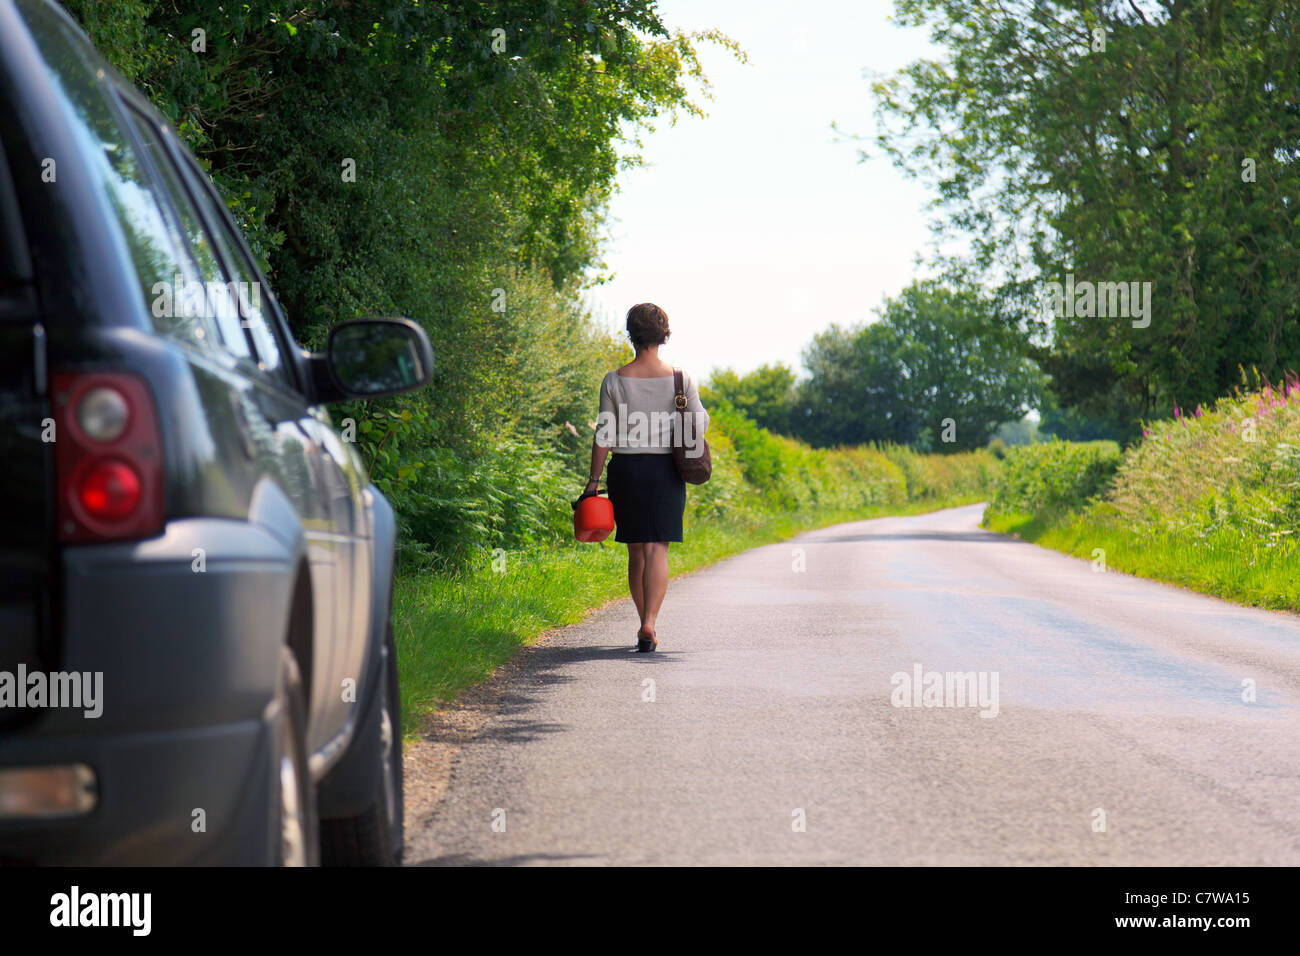 Photo d'une femme qui est en panne de véhicule marchant le long d'une route de campagne avec un carburant de rechange peut dans sa main. Banque D'Images